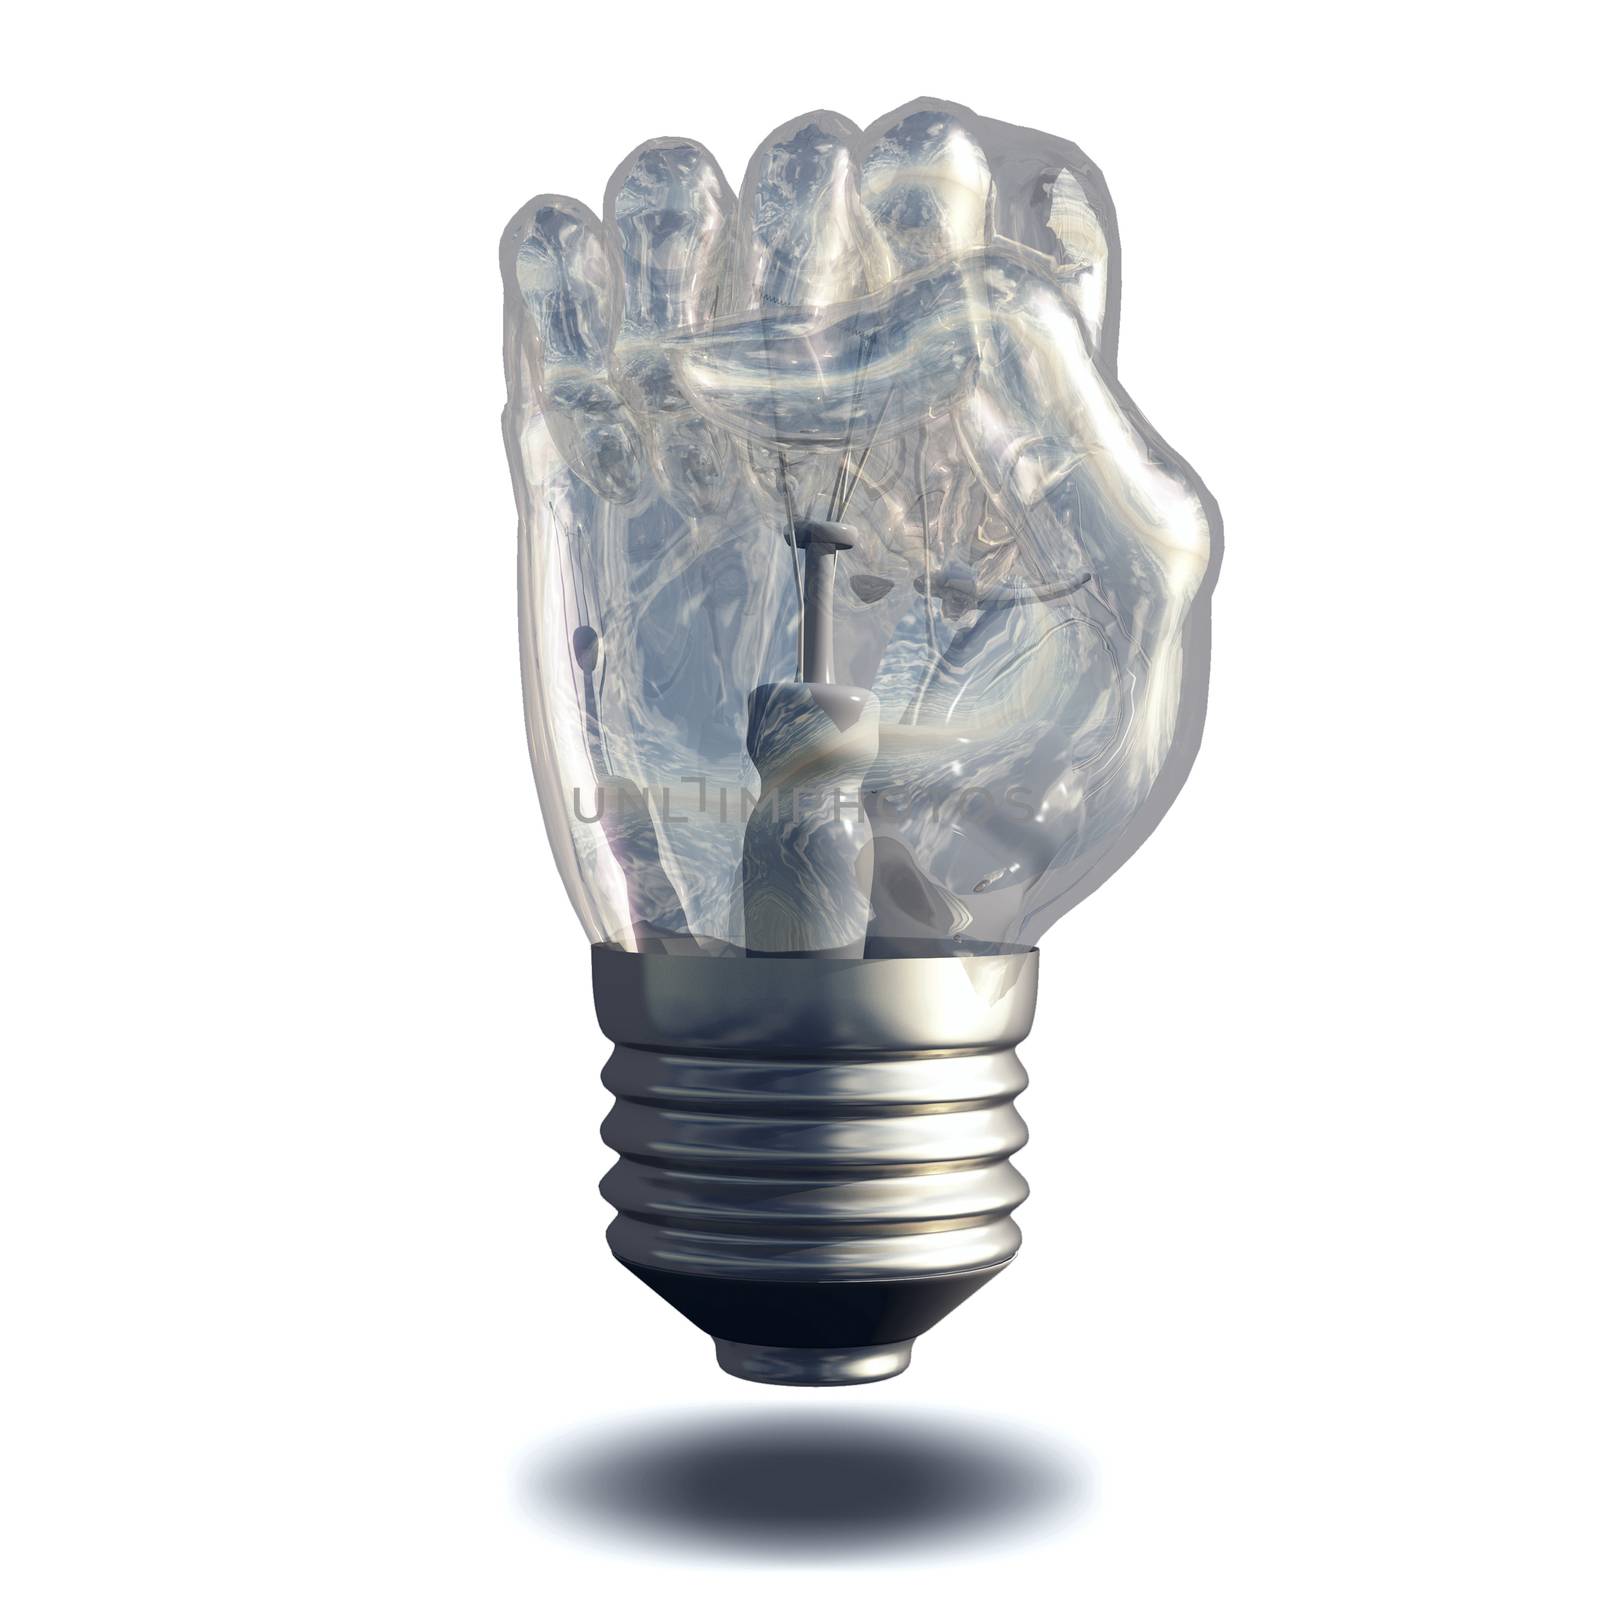 Fist Lightbulb by applesstock